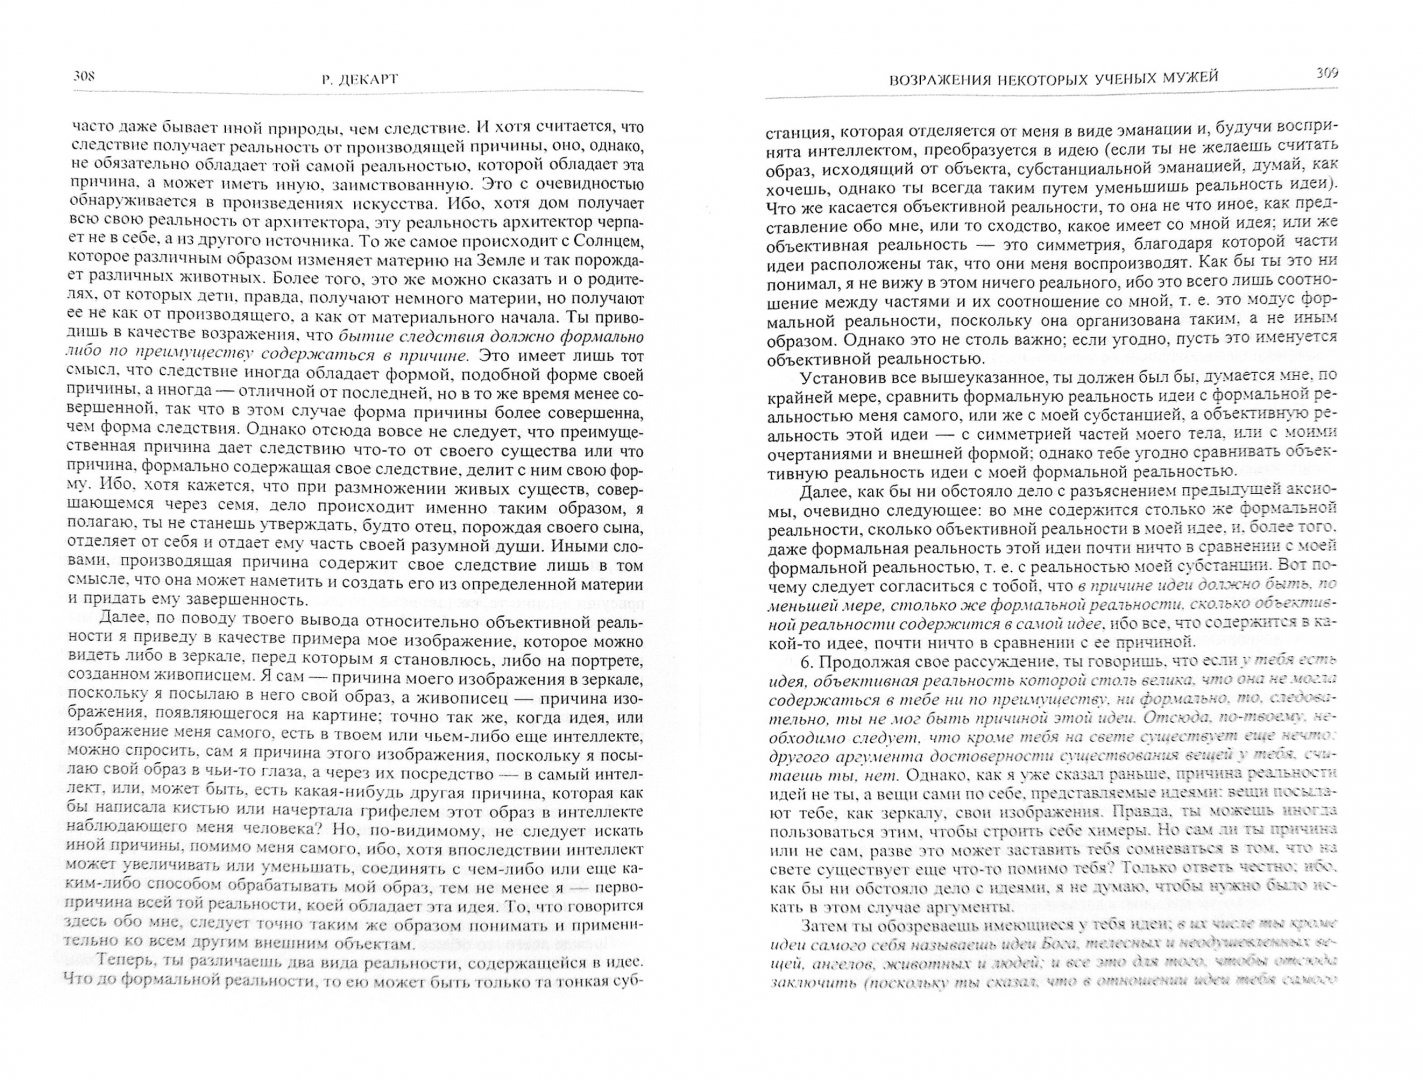 Иллюстрация 1 из 2 для Сочинения - Рене Декарт | Лабиринт - книги. Источник: Лабиринт